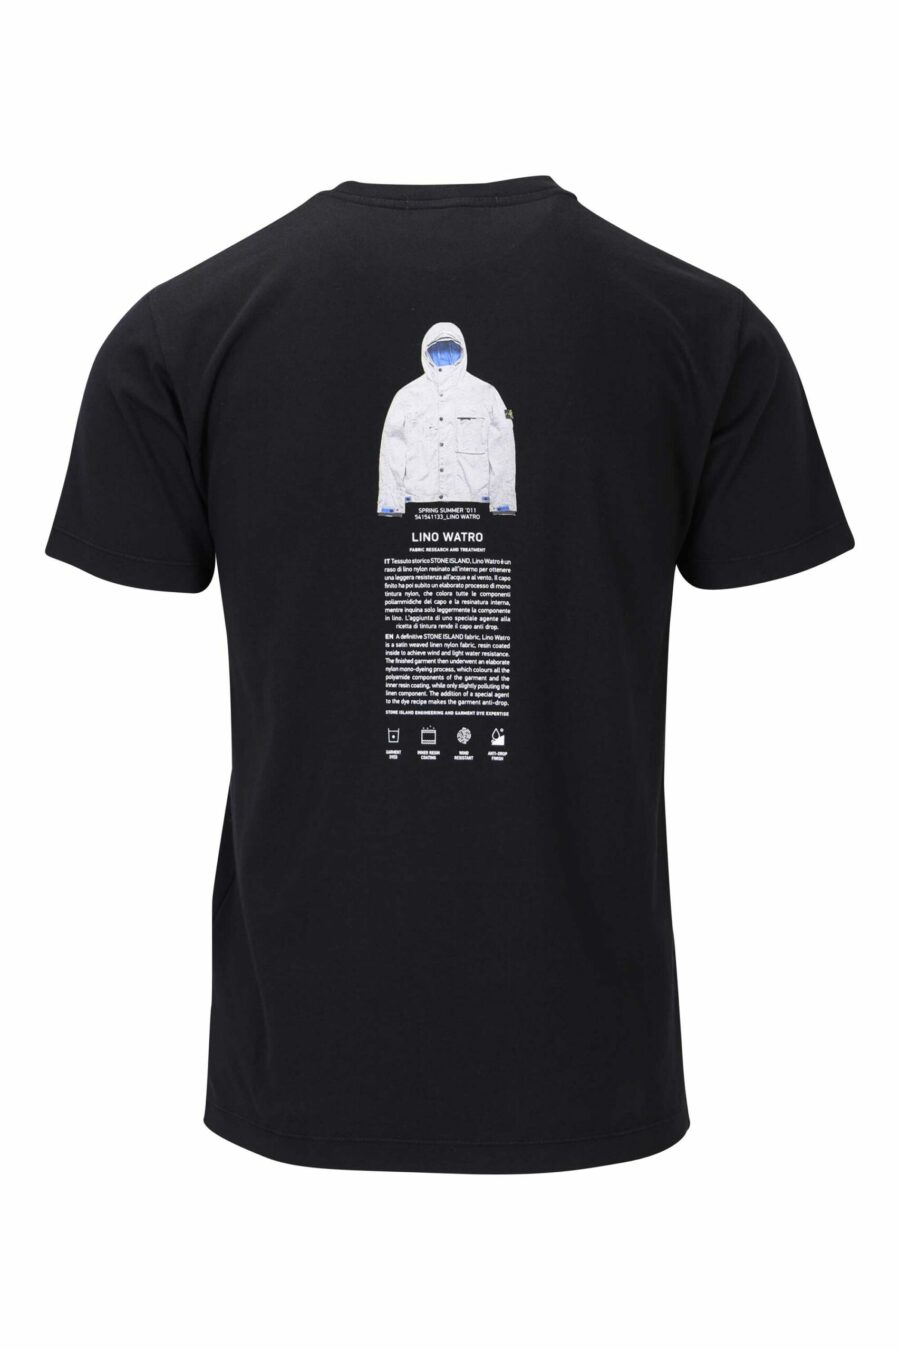 Schwarzes T-Shirt mit zentriertem Logo und Druck auf dem Rücken - 8052572755927 2 skaliert